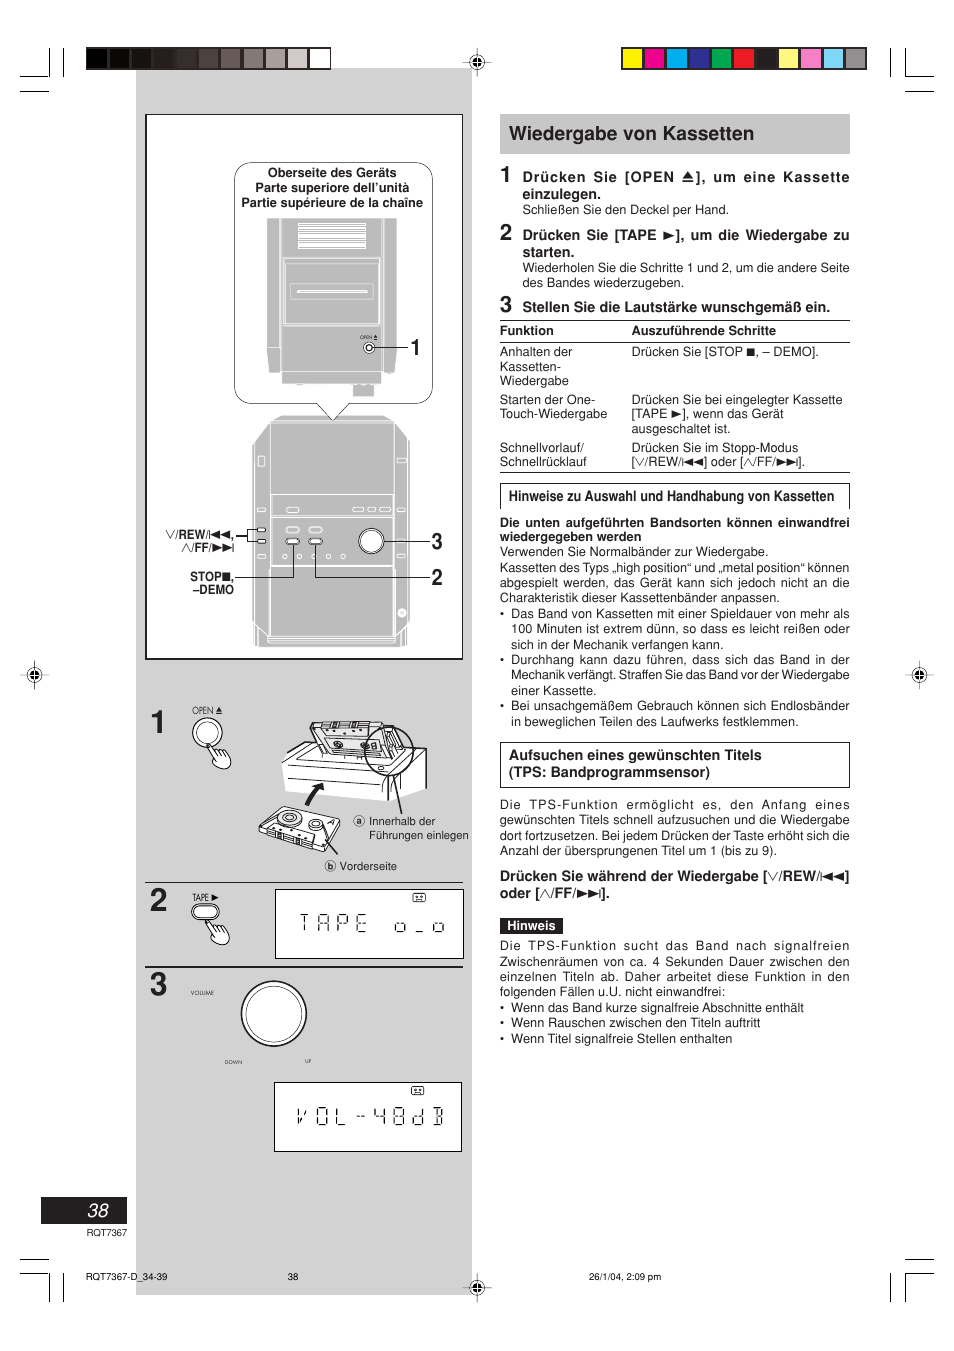 Wiedergabe von kassetten | Panasonic SCPM19 Benutzerhandbuch | Seite 38 / 56